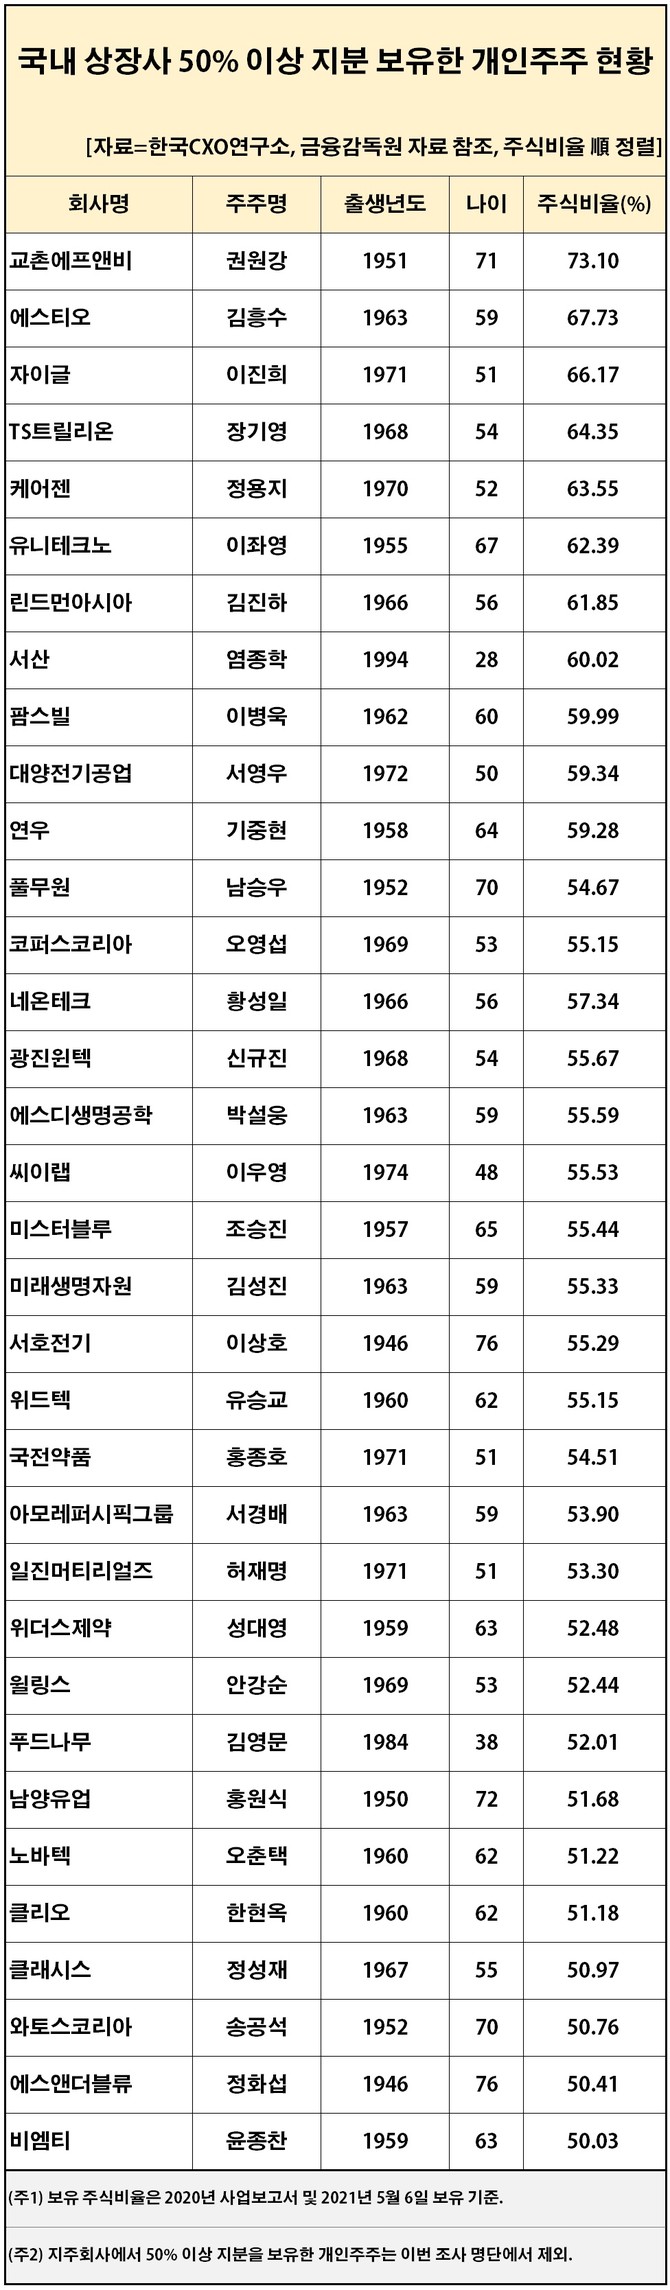 국내 상장사 50% 이상 지분 보유한 개인주주 현황. 사진제공. 한국CXO연구소